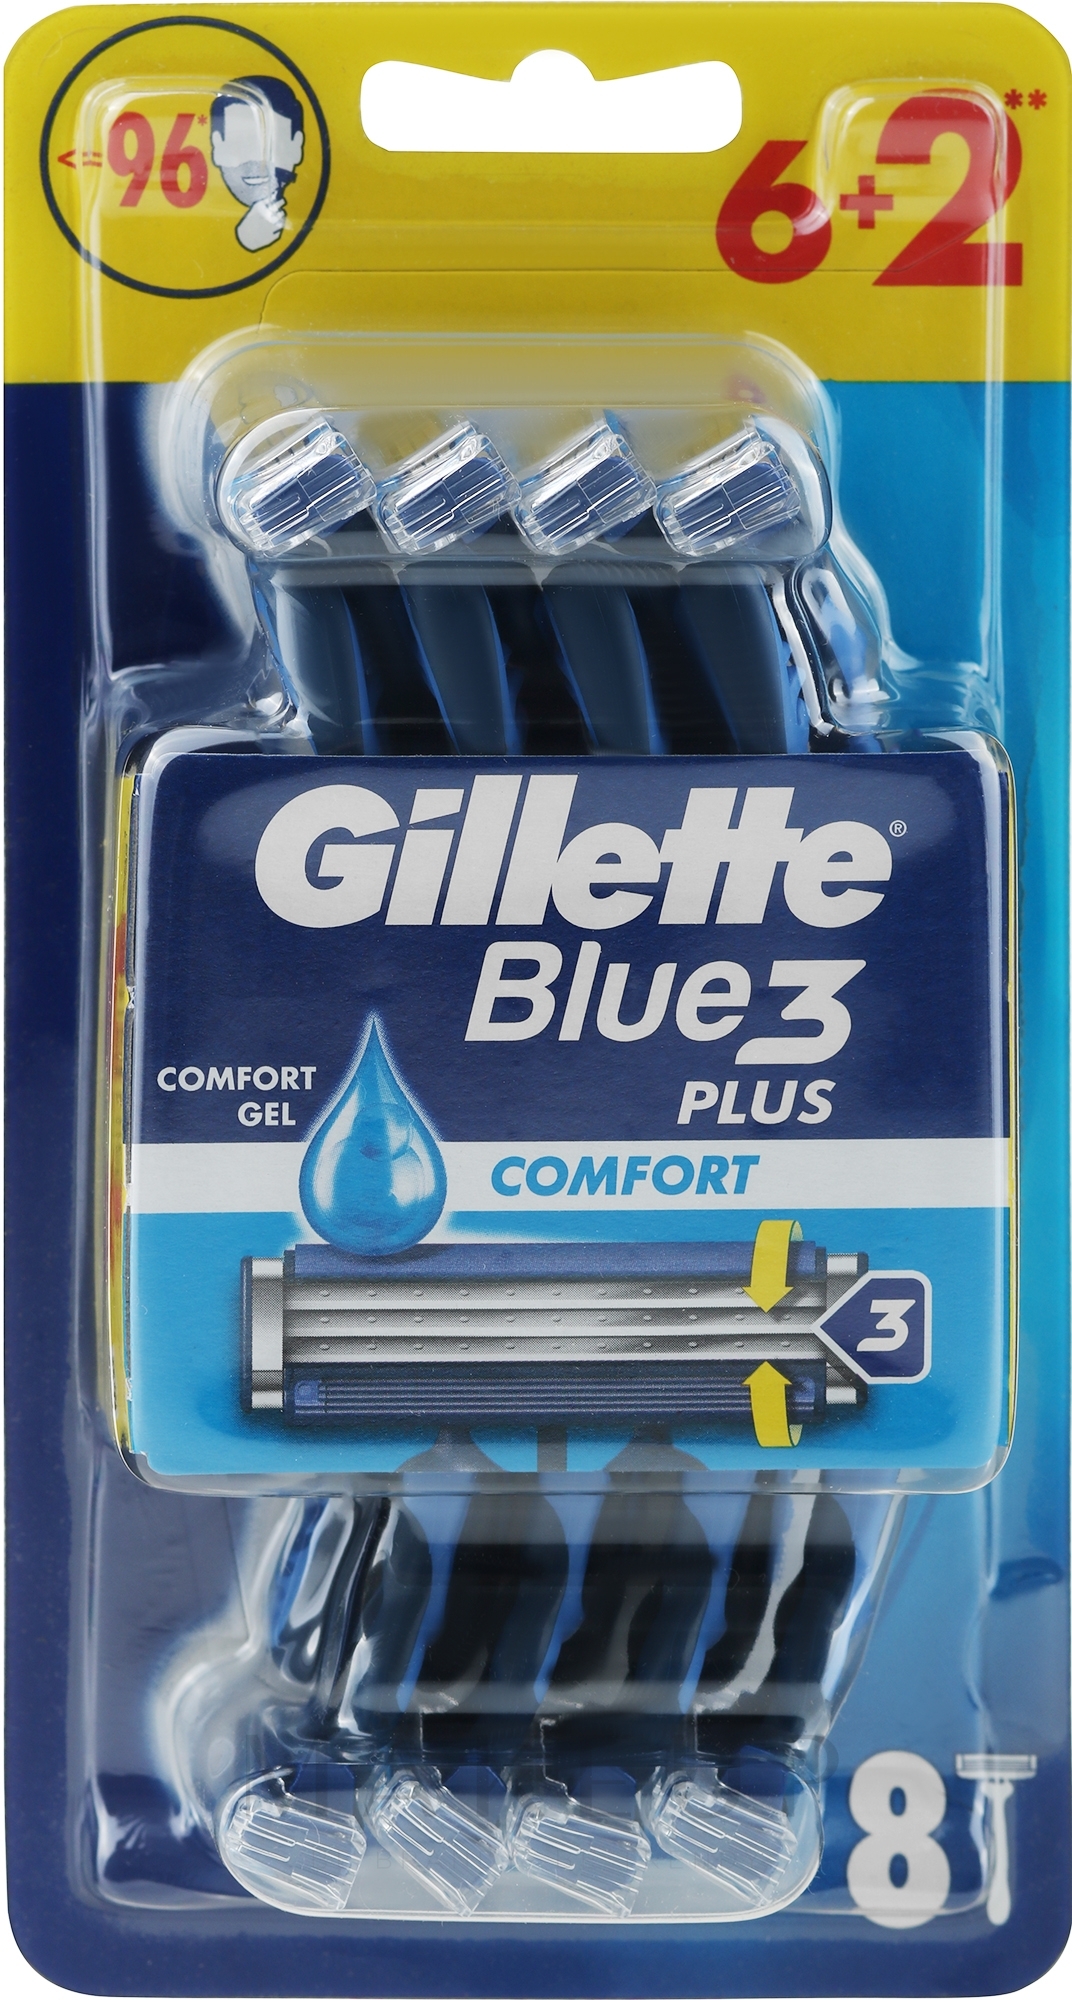 Einwegrasierer Set 6+2 St. - Gillette Blue 3 Comfort — Bild 8 St.